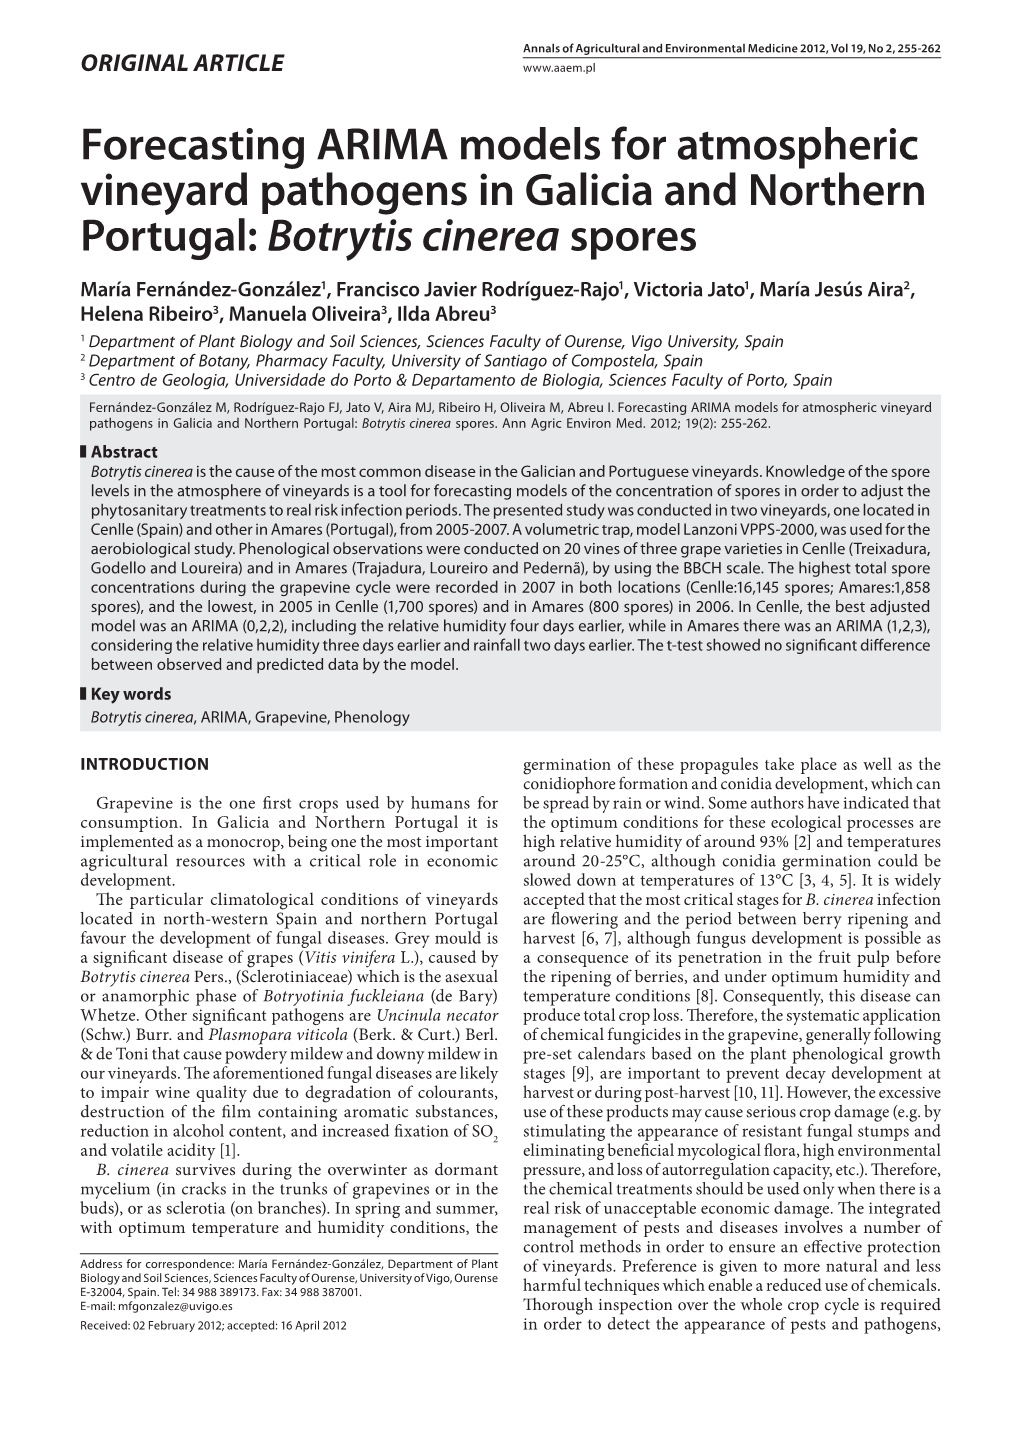 Botrytis Cinerea Spores